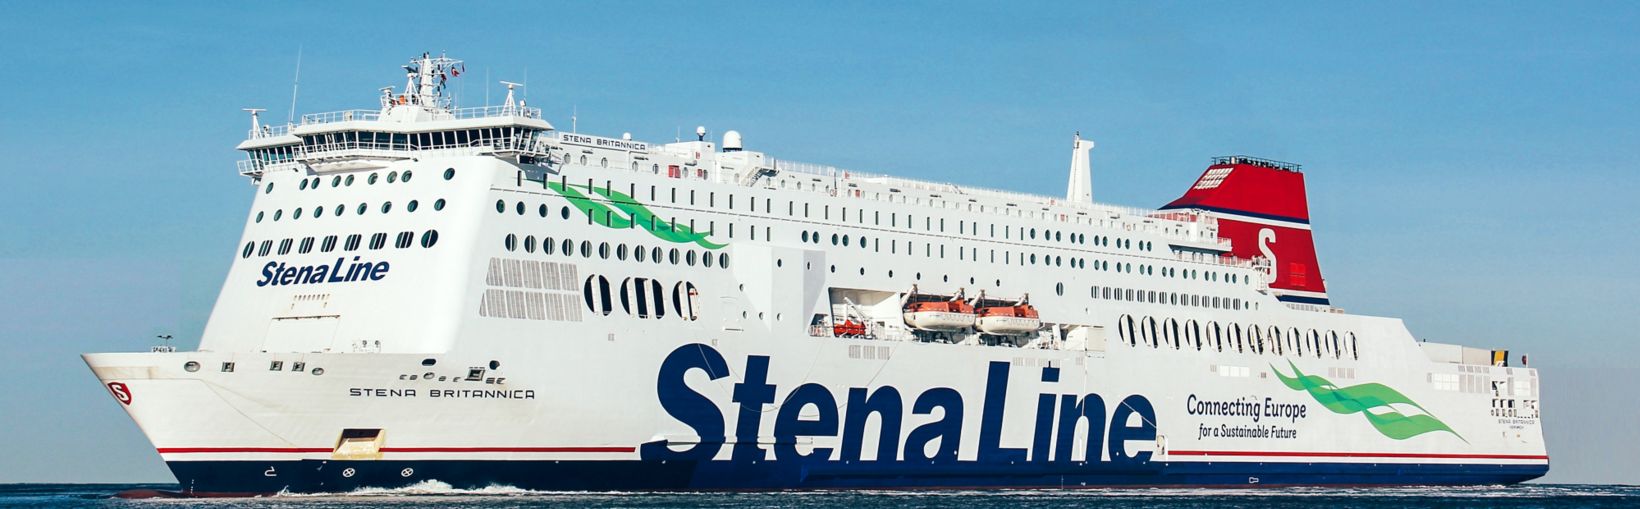 Stena Britannica ferry en el mar